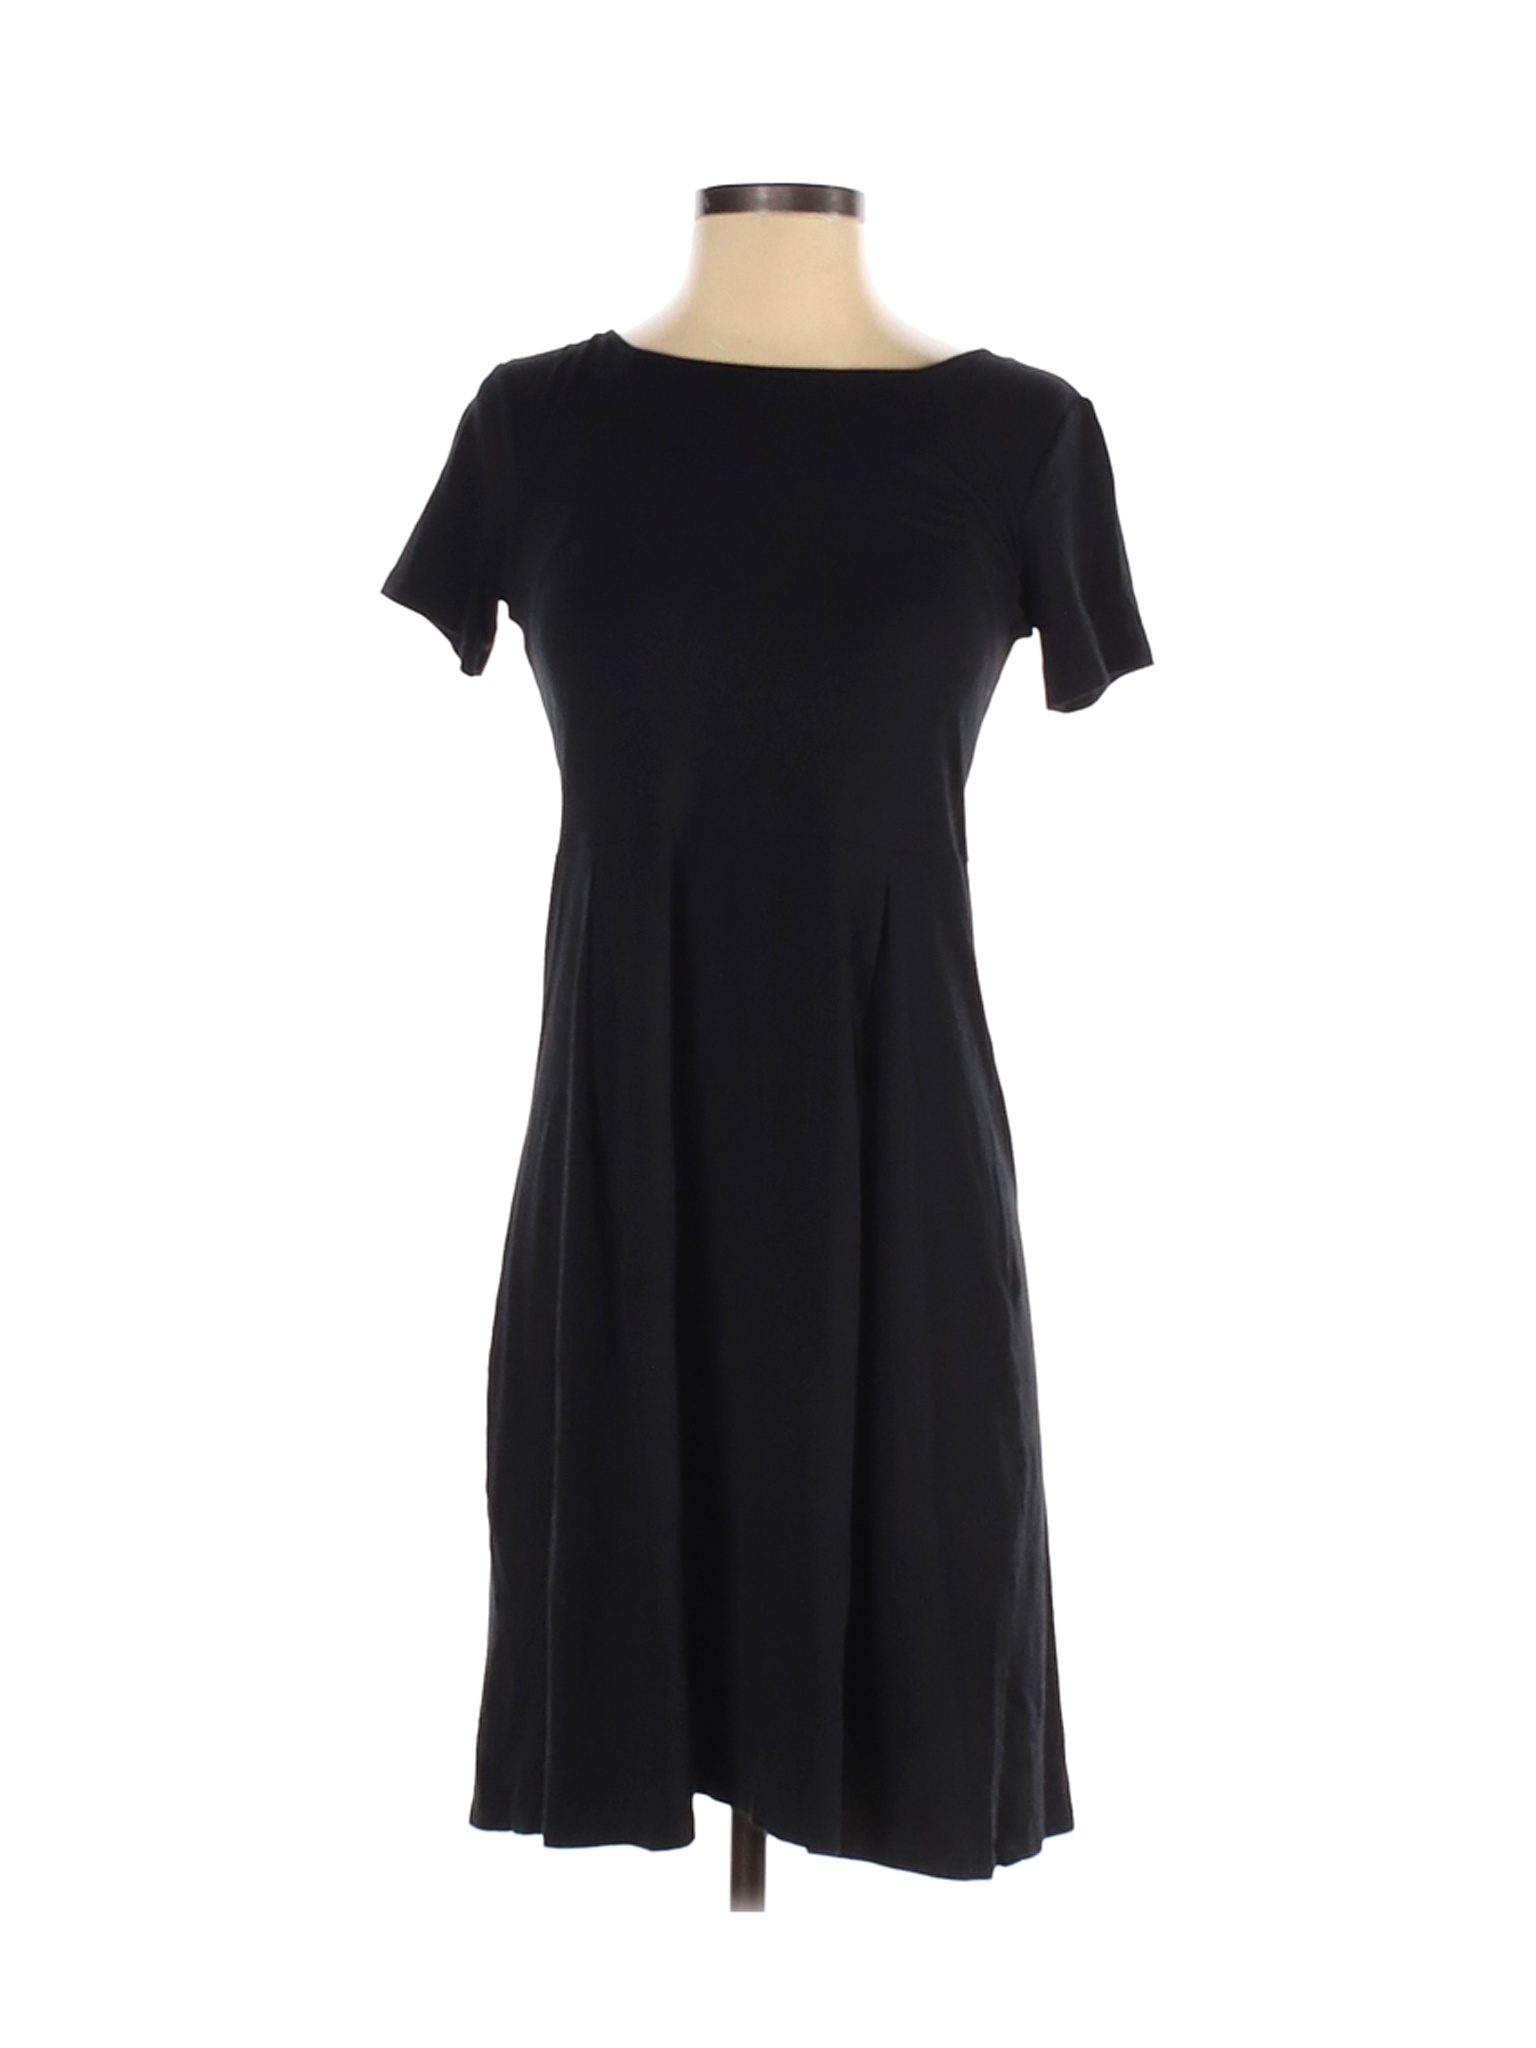 Uniqlo Women Black Casual Dress S | eBay